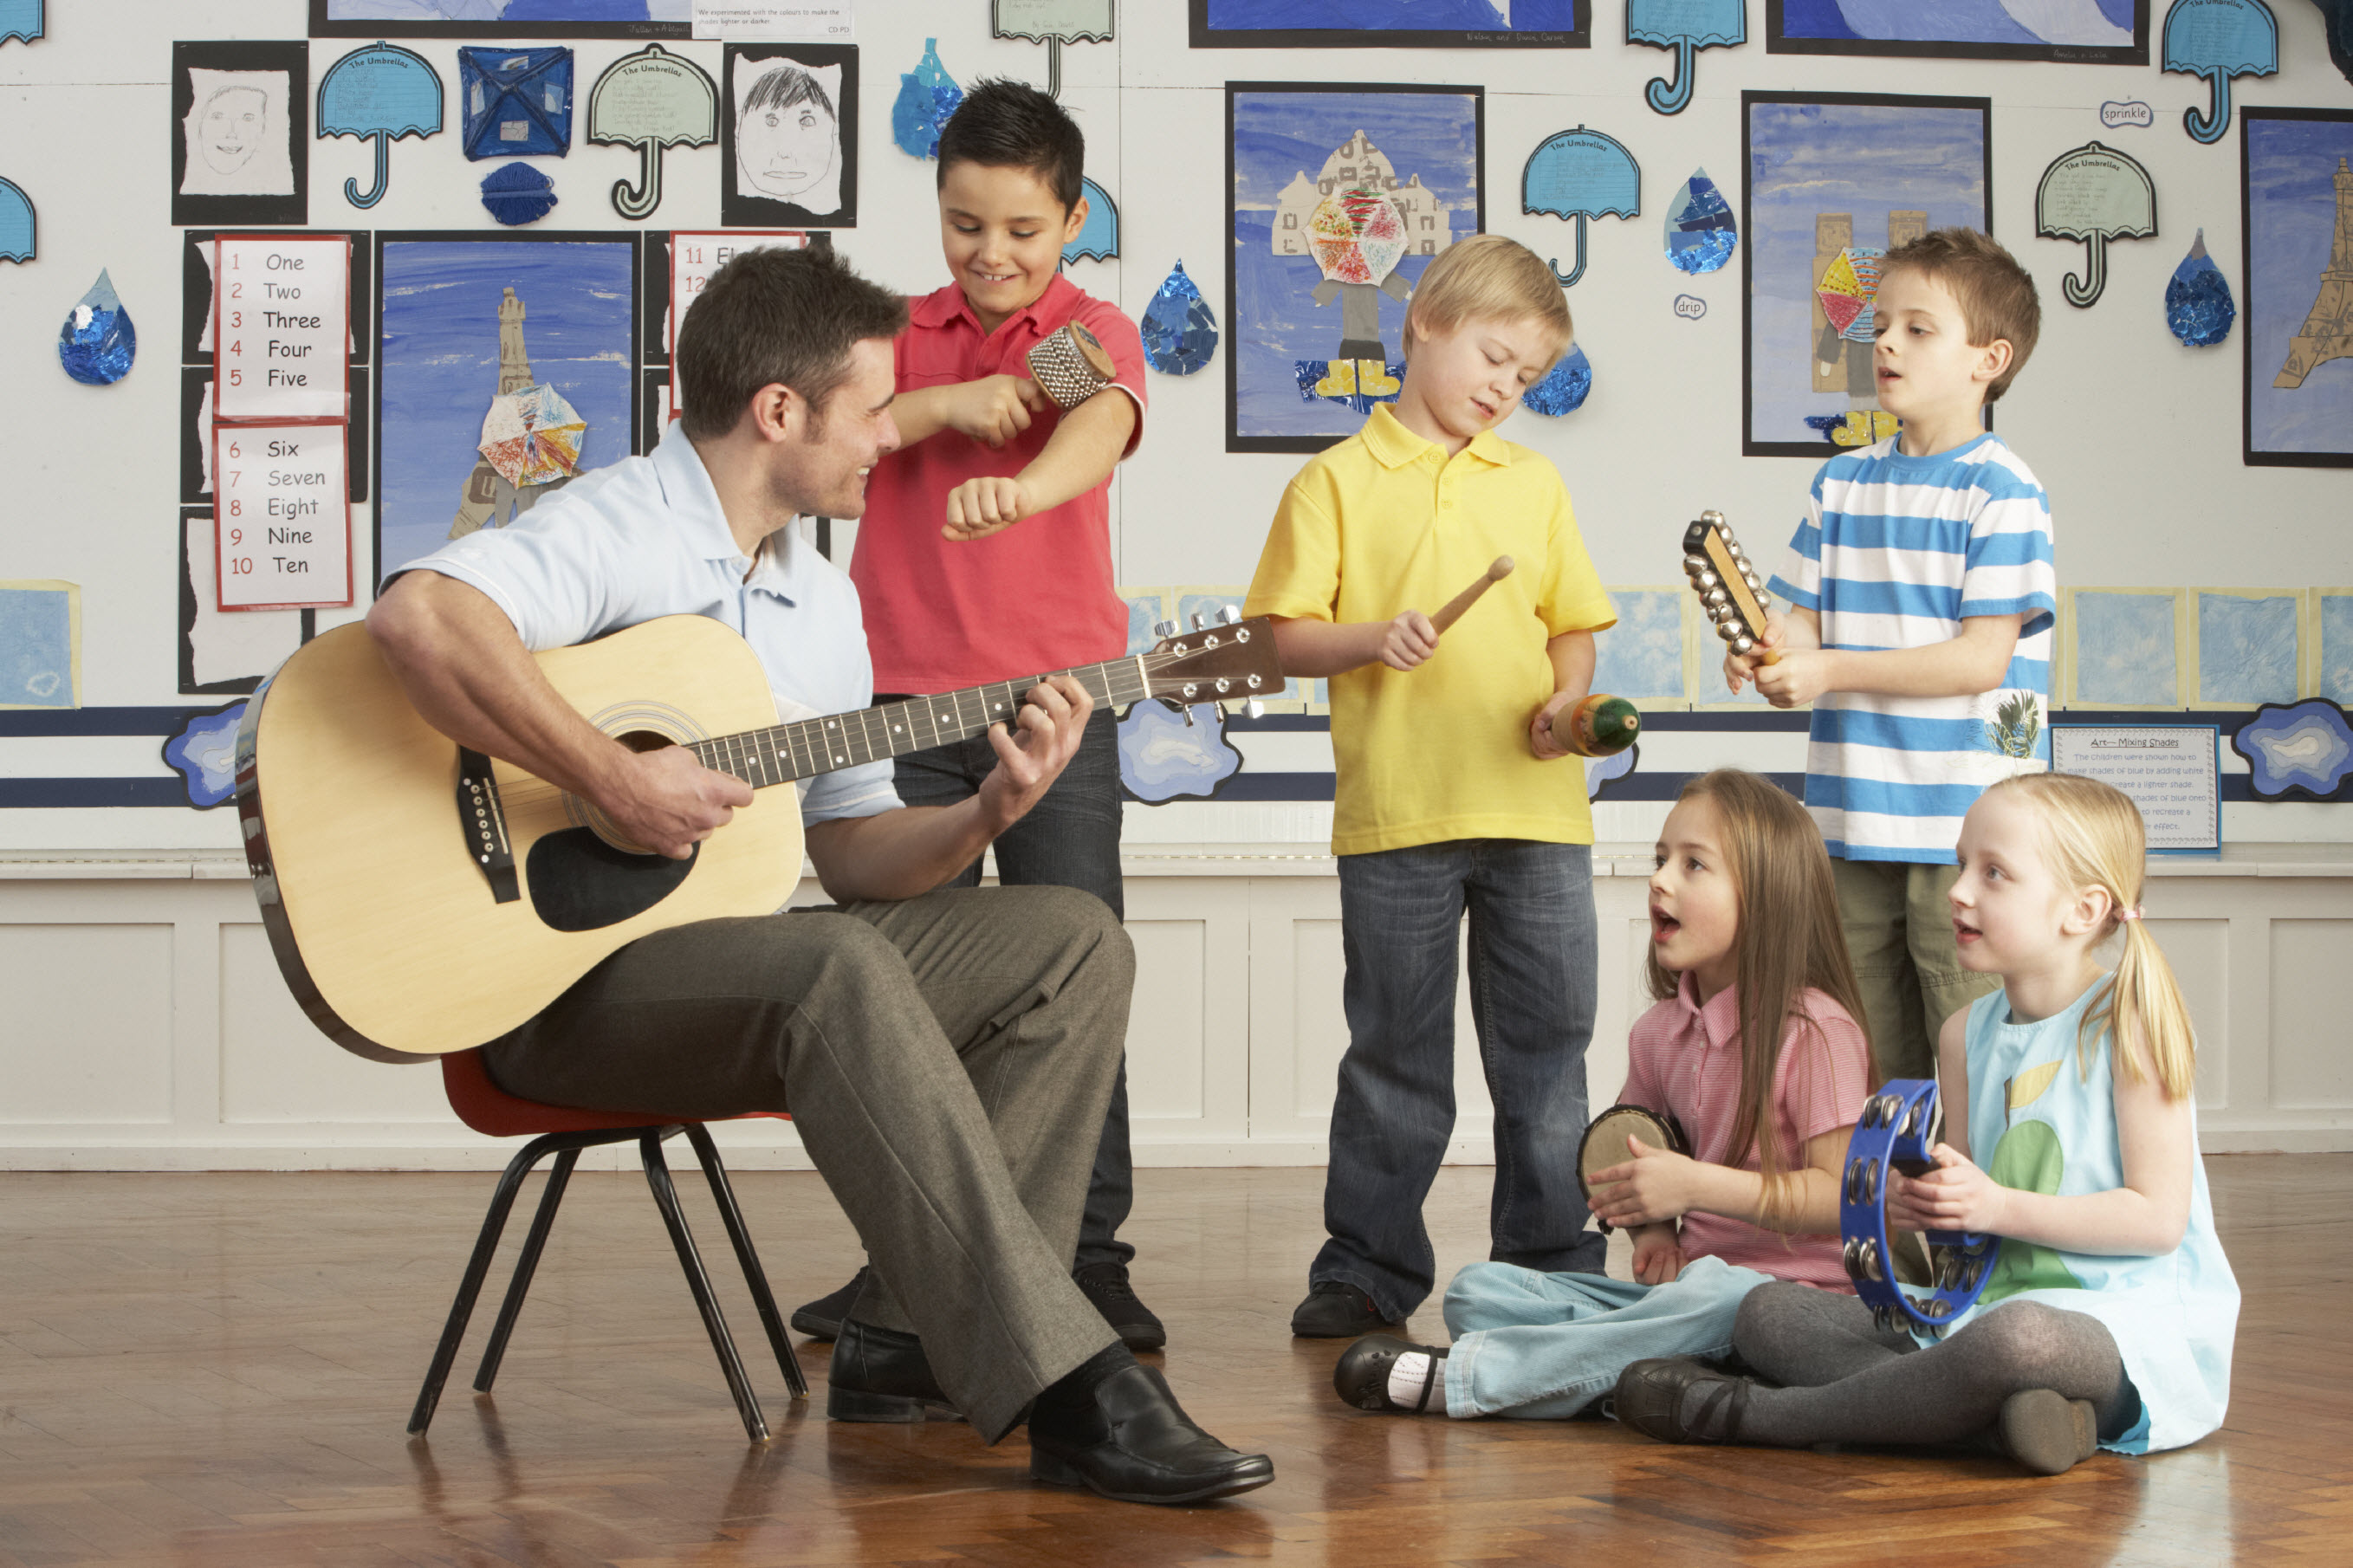 Детском саду музыкальный концерт. Музыкальное занятие в детском саду. Дети на музыкальном занятии. Музыкальные инструменты для детей. Дети играющие на музыкальных инструментах.